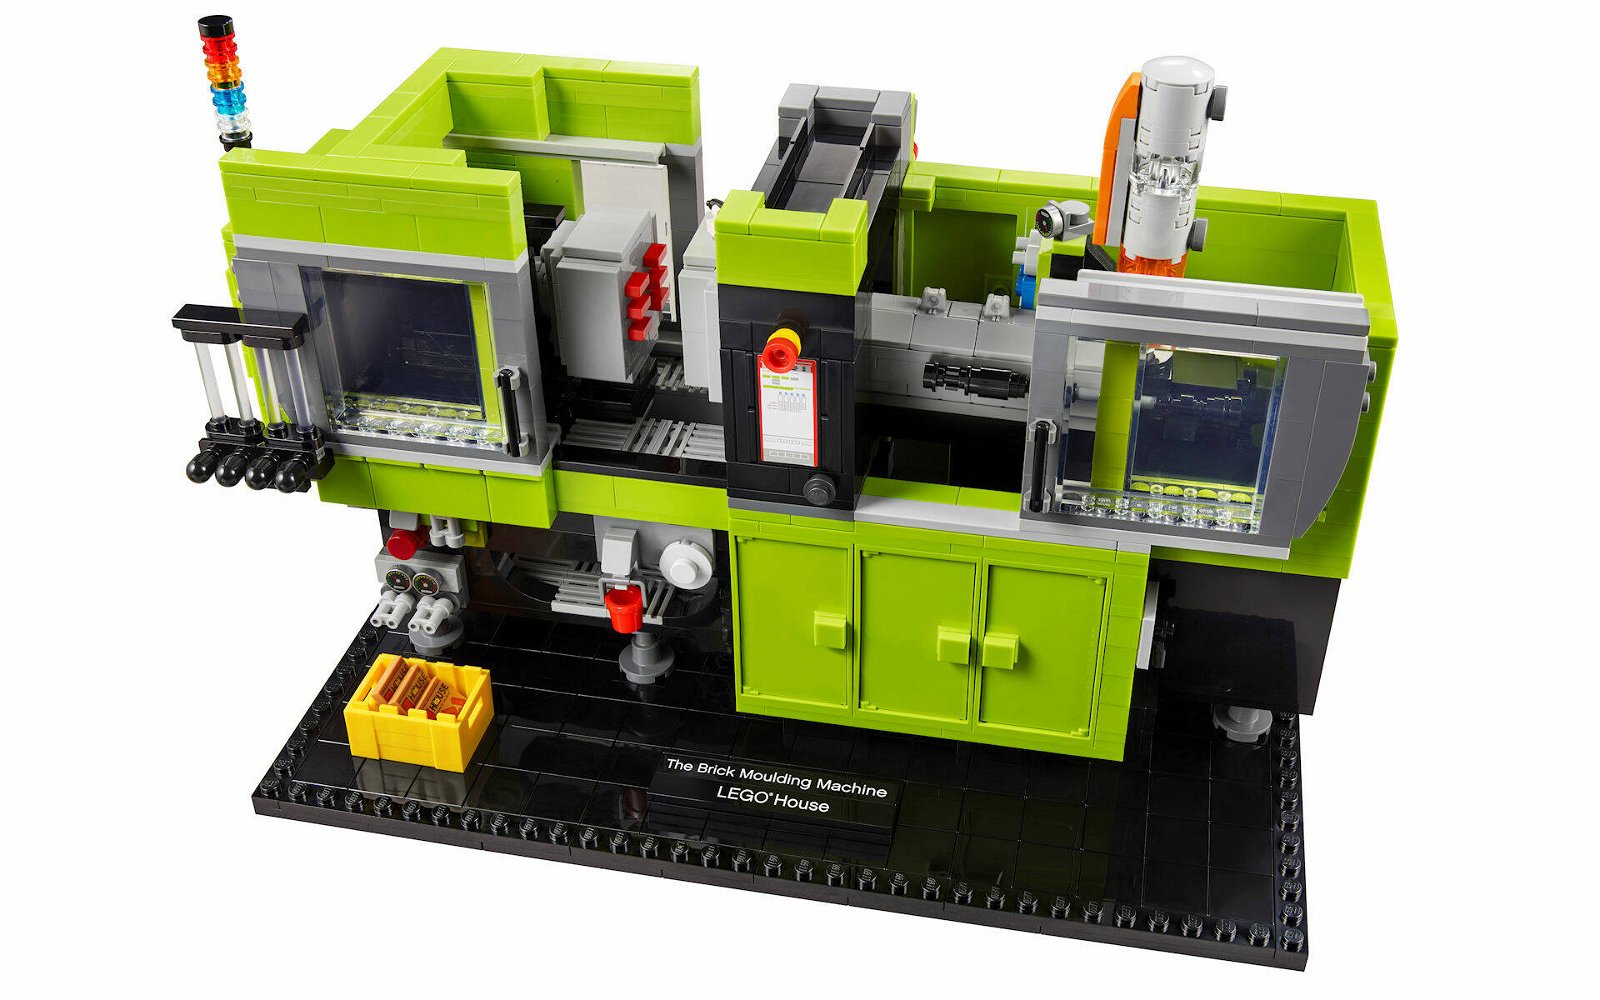 Immagine di LEGO House: svelato il nuovo set esclusivo